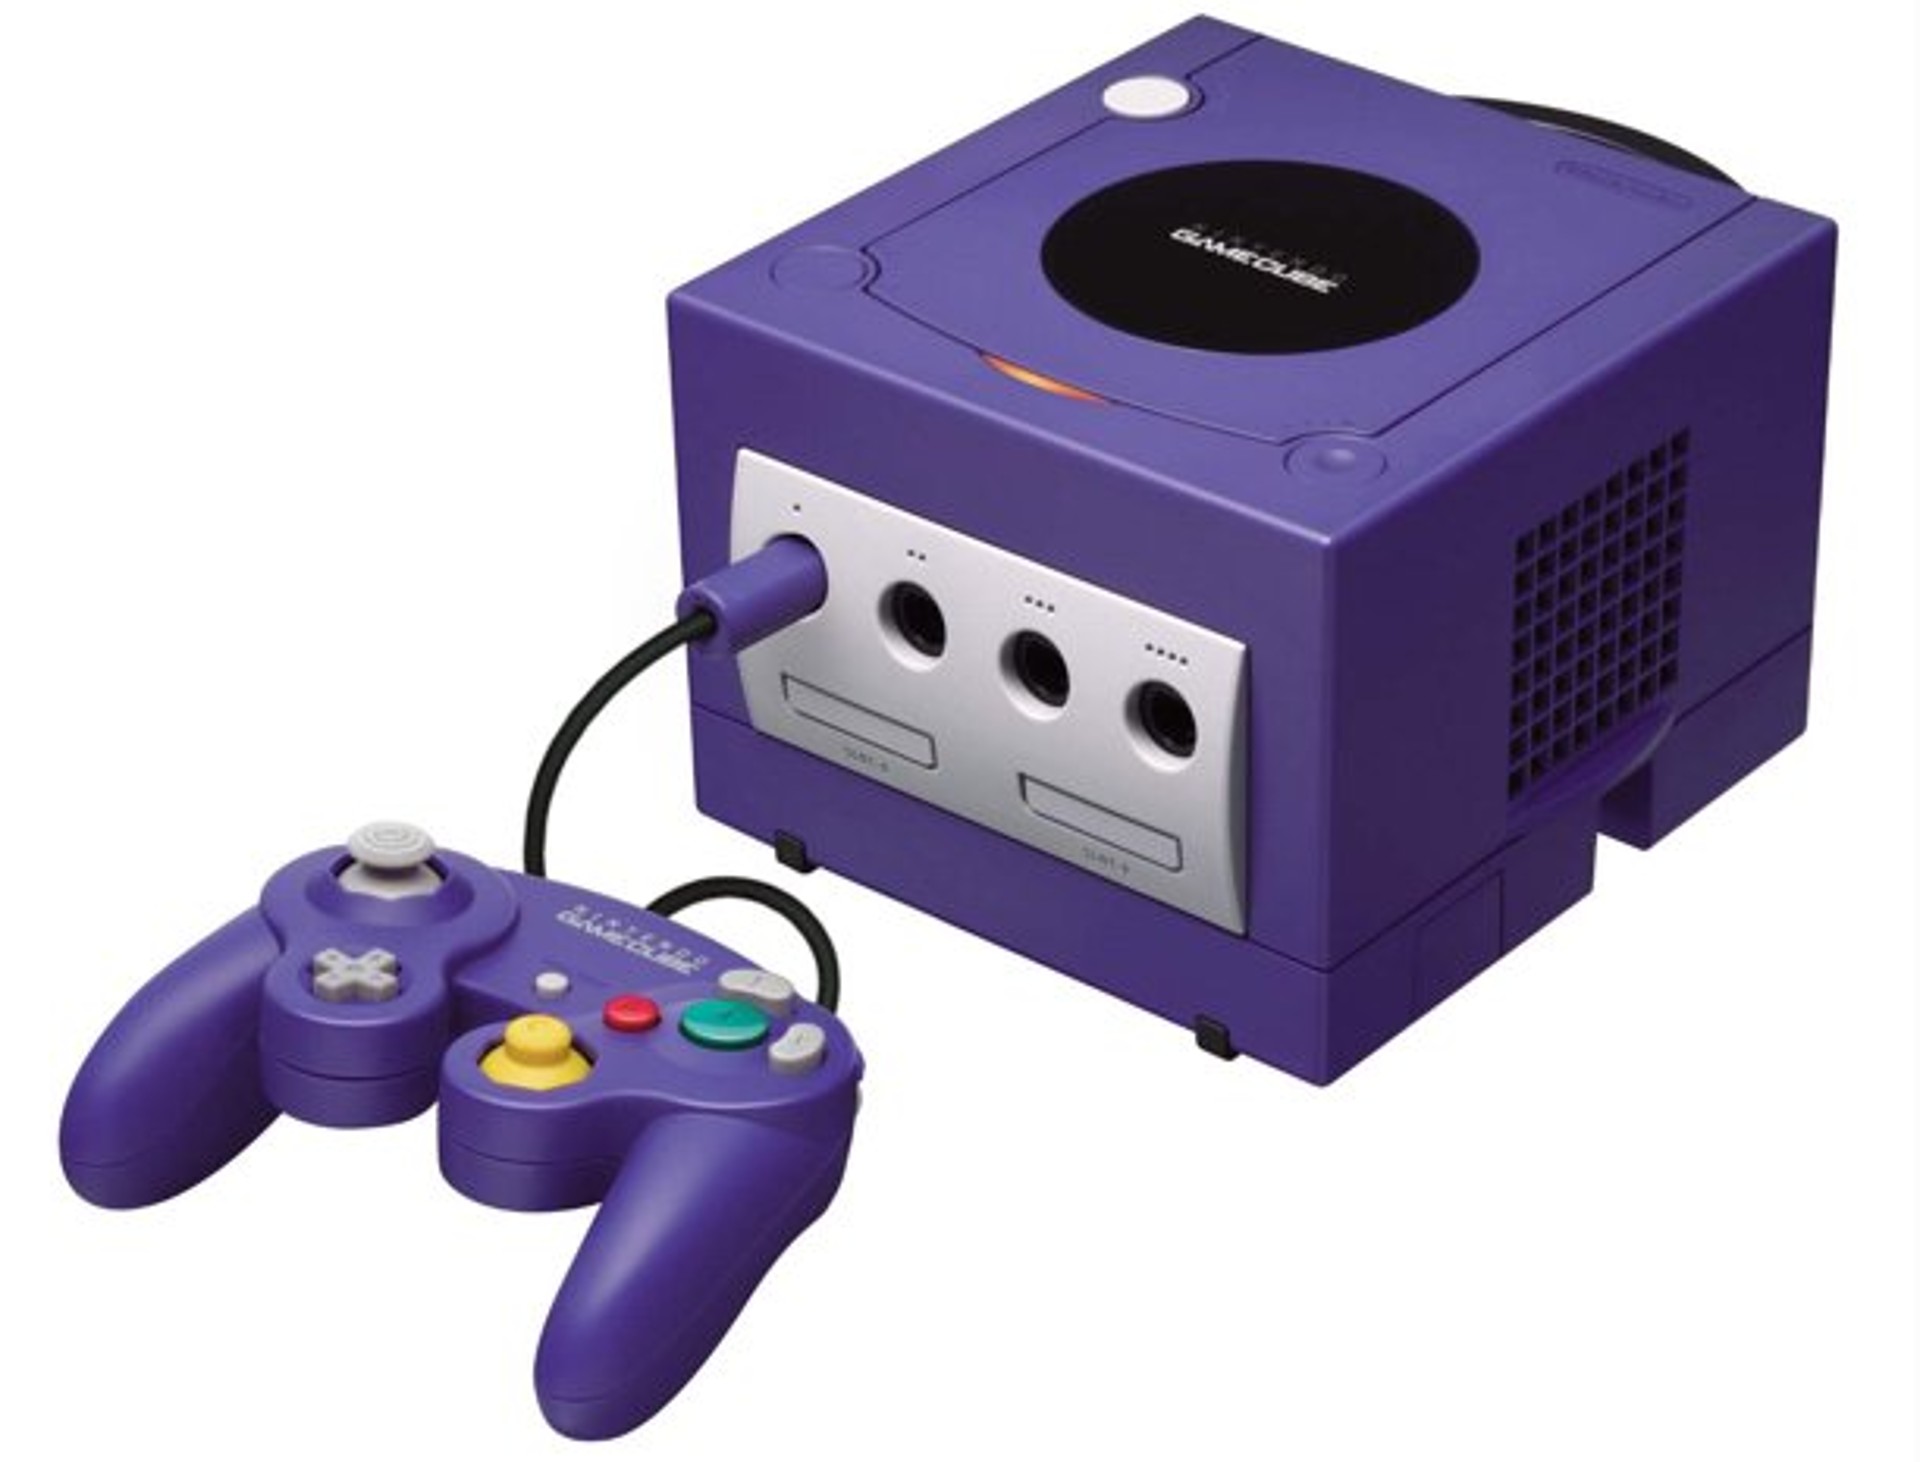 อดีตพนักงาน Nintendo เล่าถึงเหตุการณ์ที่พวกเขาคัดค้านการใช้สีม่วงเป็นสีของ GameCube